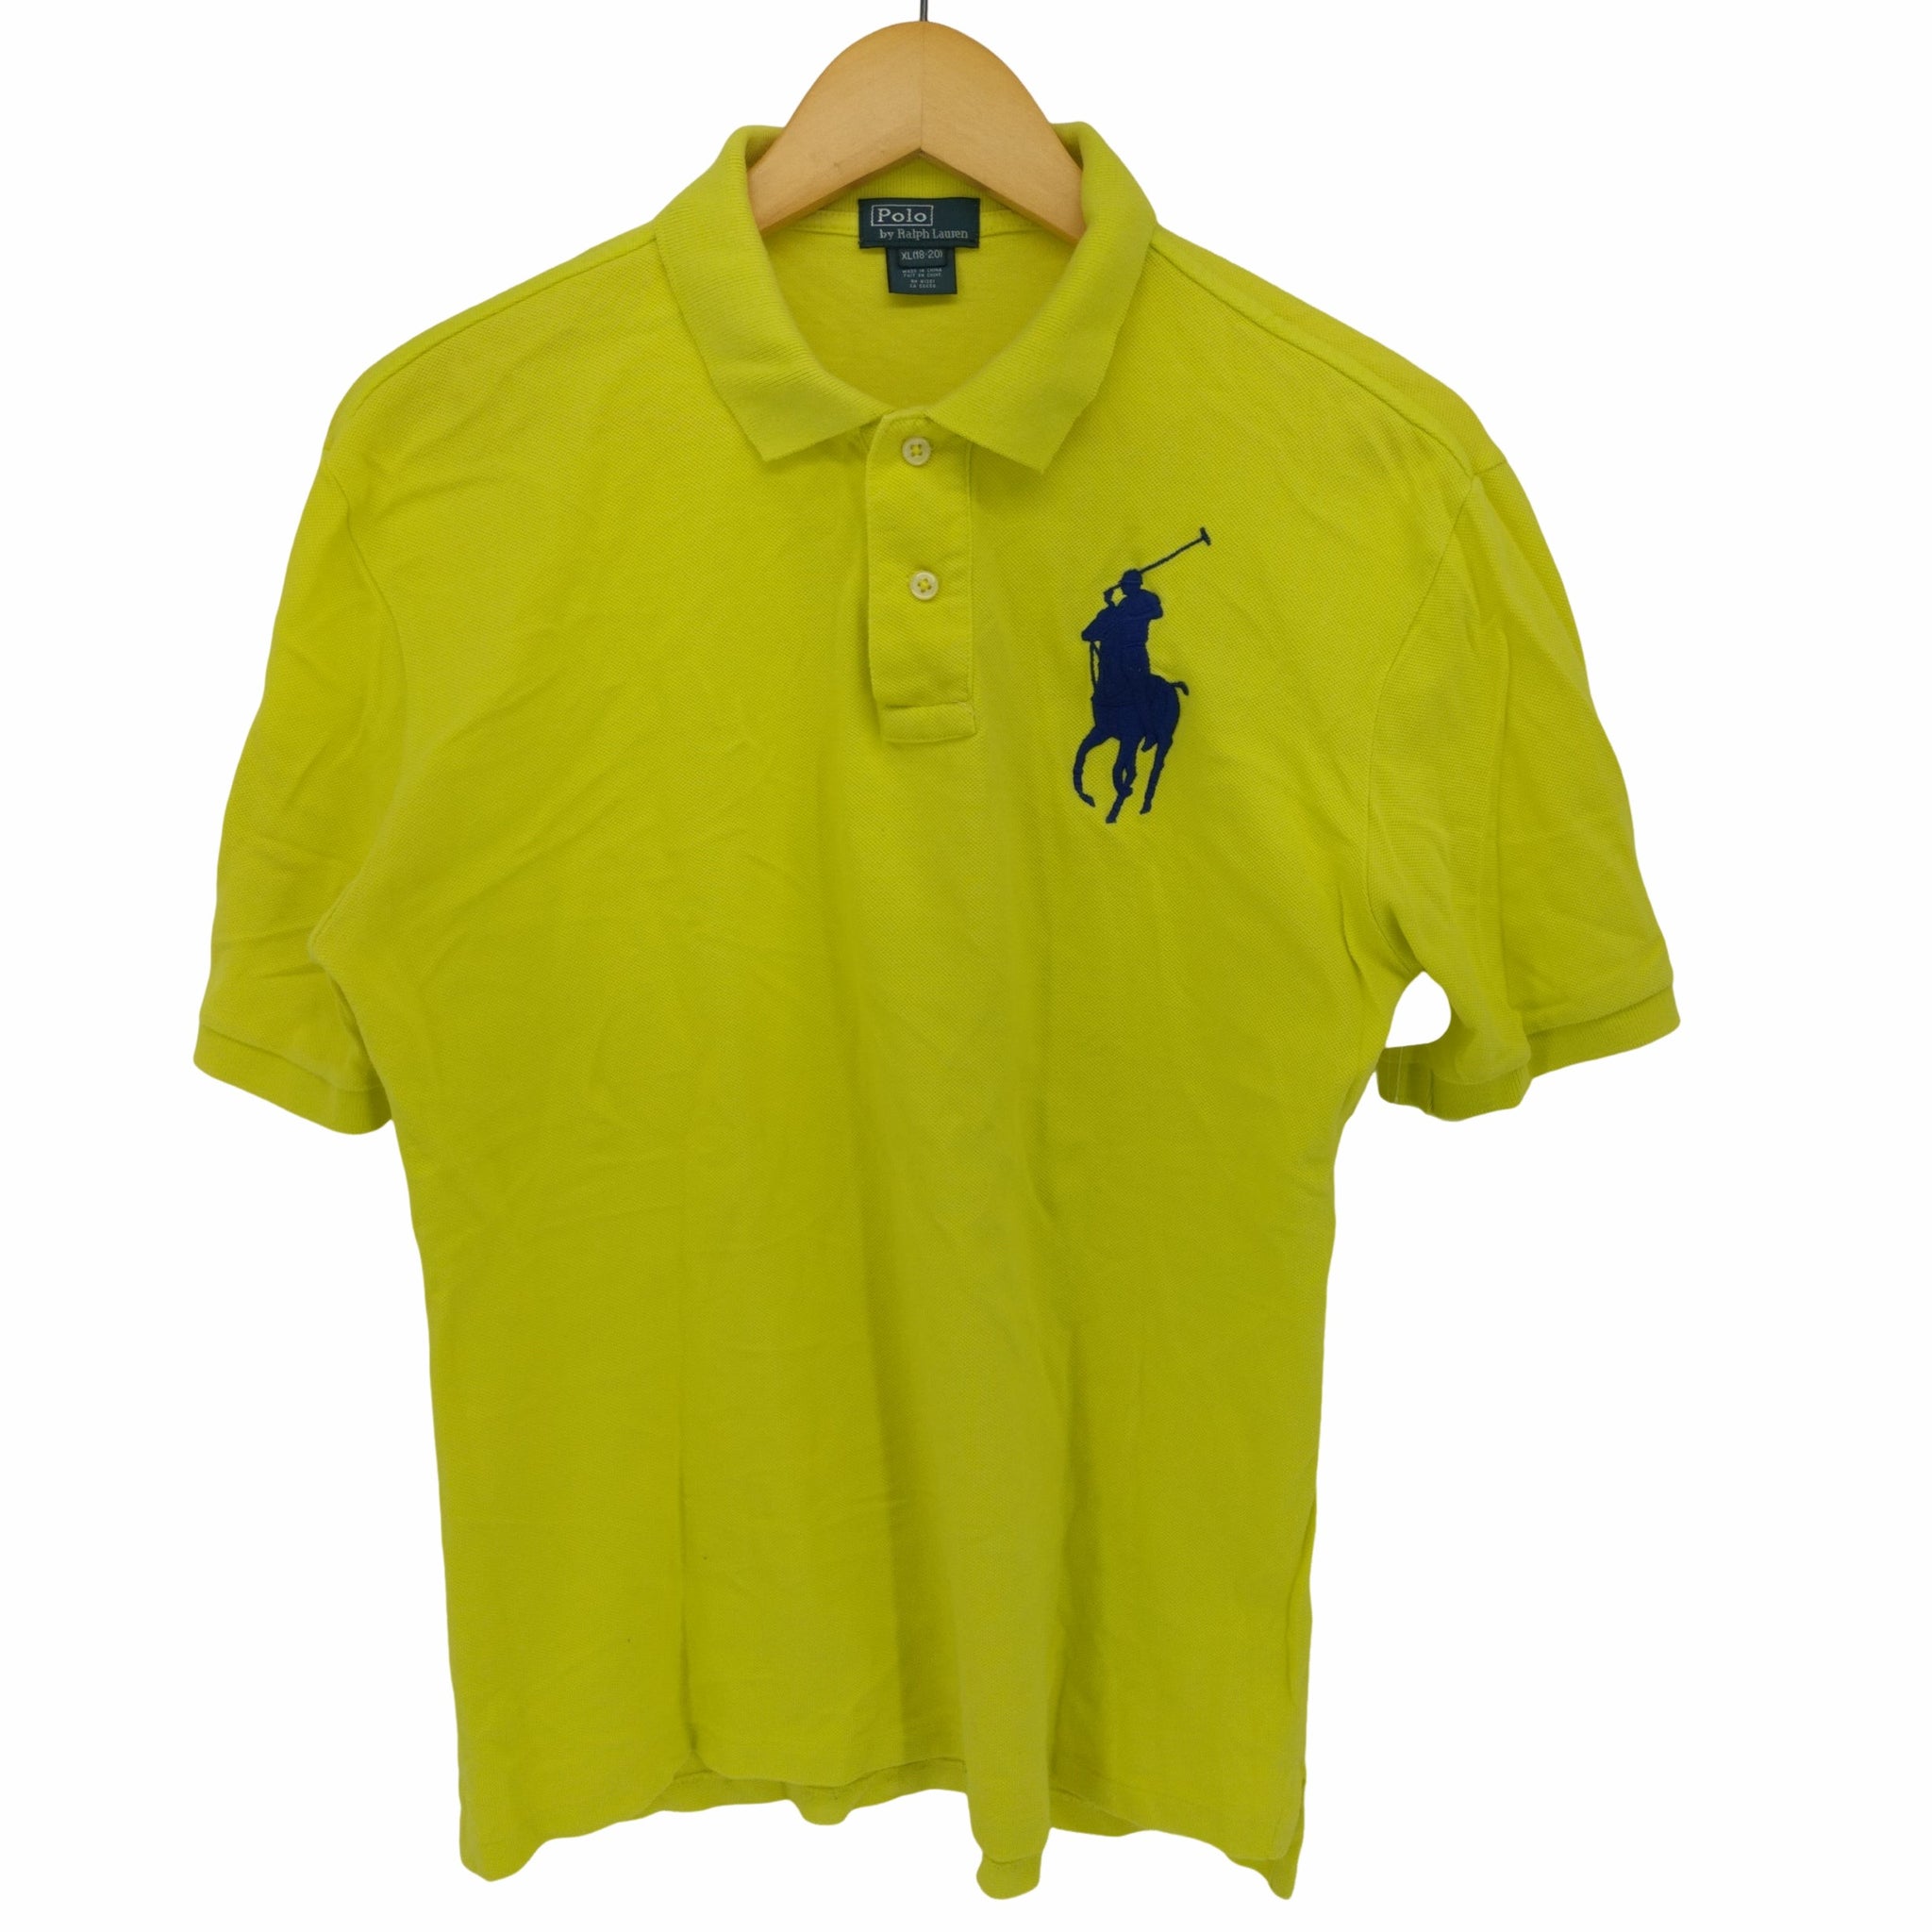 Polo by RALPH LAUREN(ポロバイラルフローレン)ビッグポニー刺繍 ポロシャツ